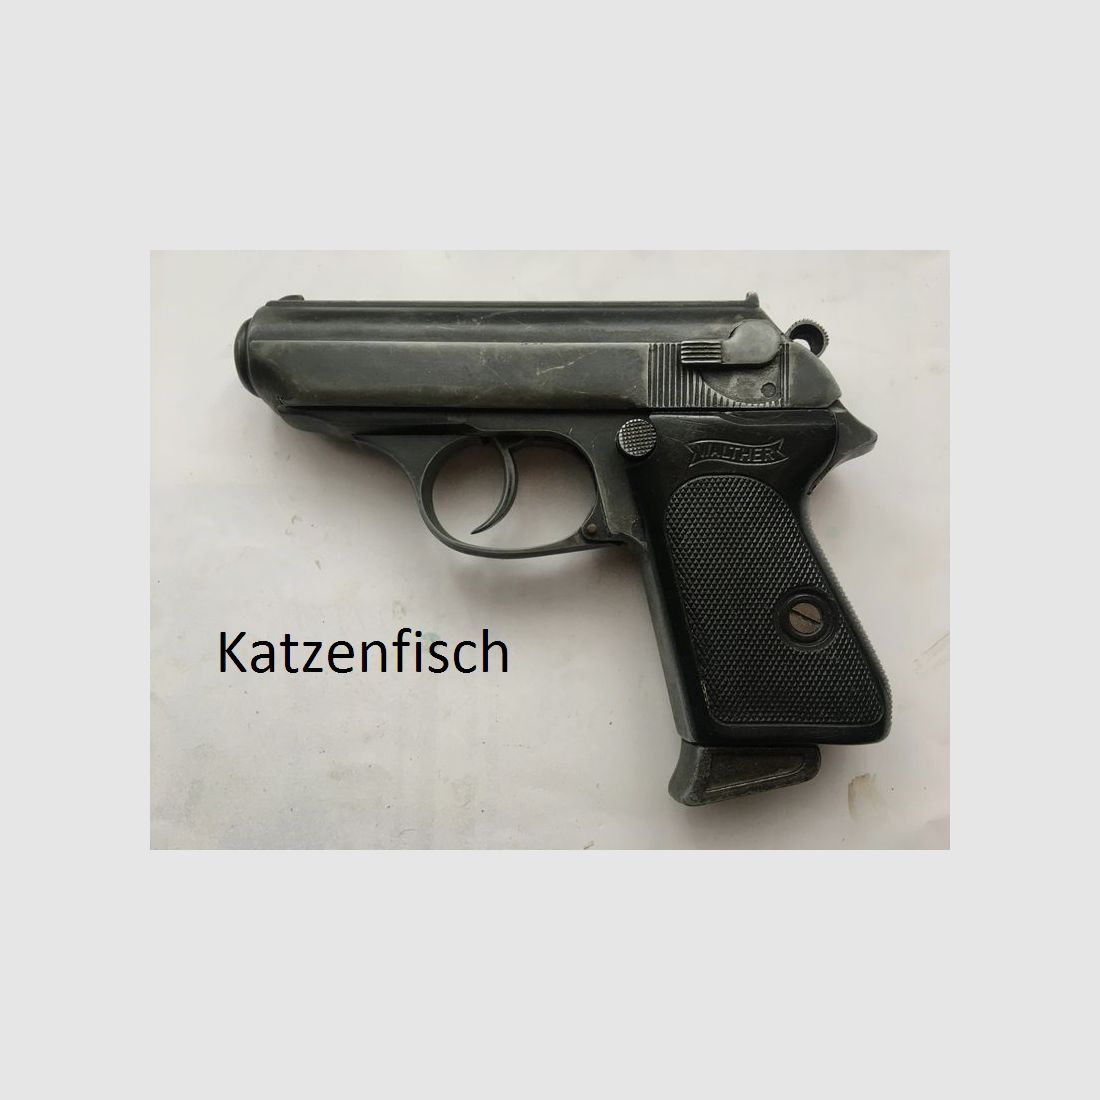 Walther PPK Wehrmacht Modellwaffe (Japan) mit 90° Sicherung Zella Mehlis,sehr selten,60er/70er Jahre